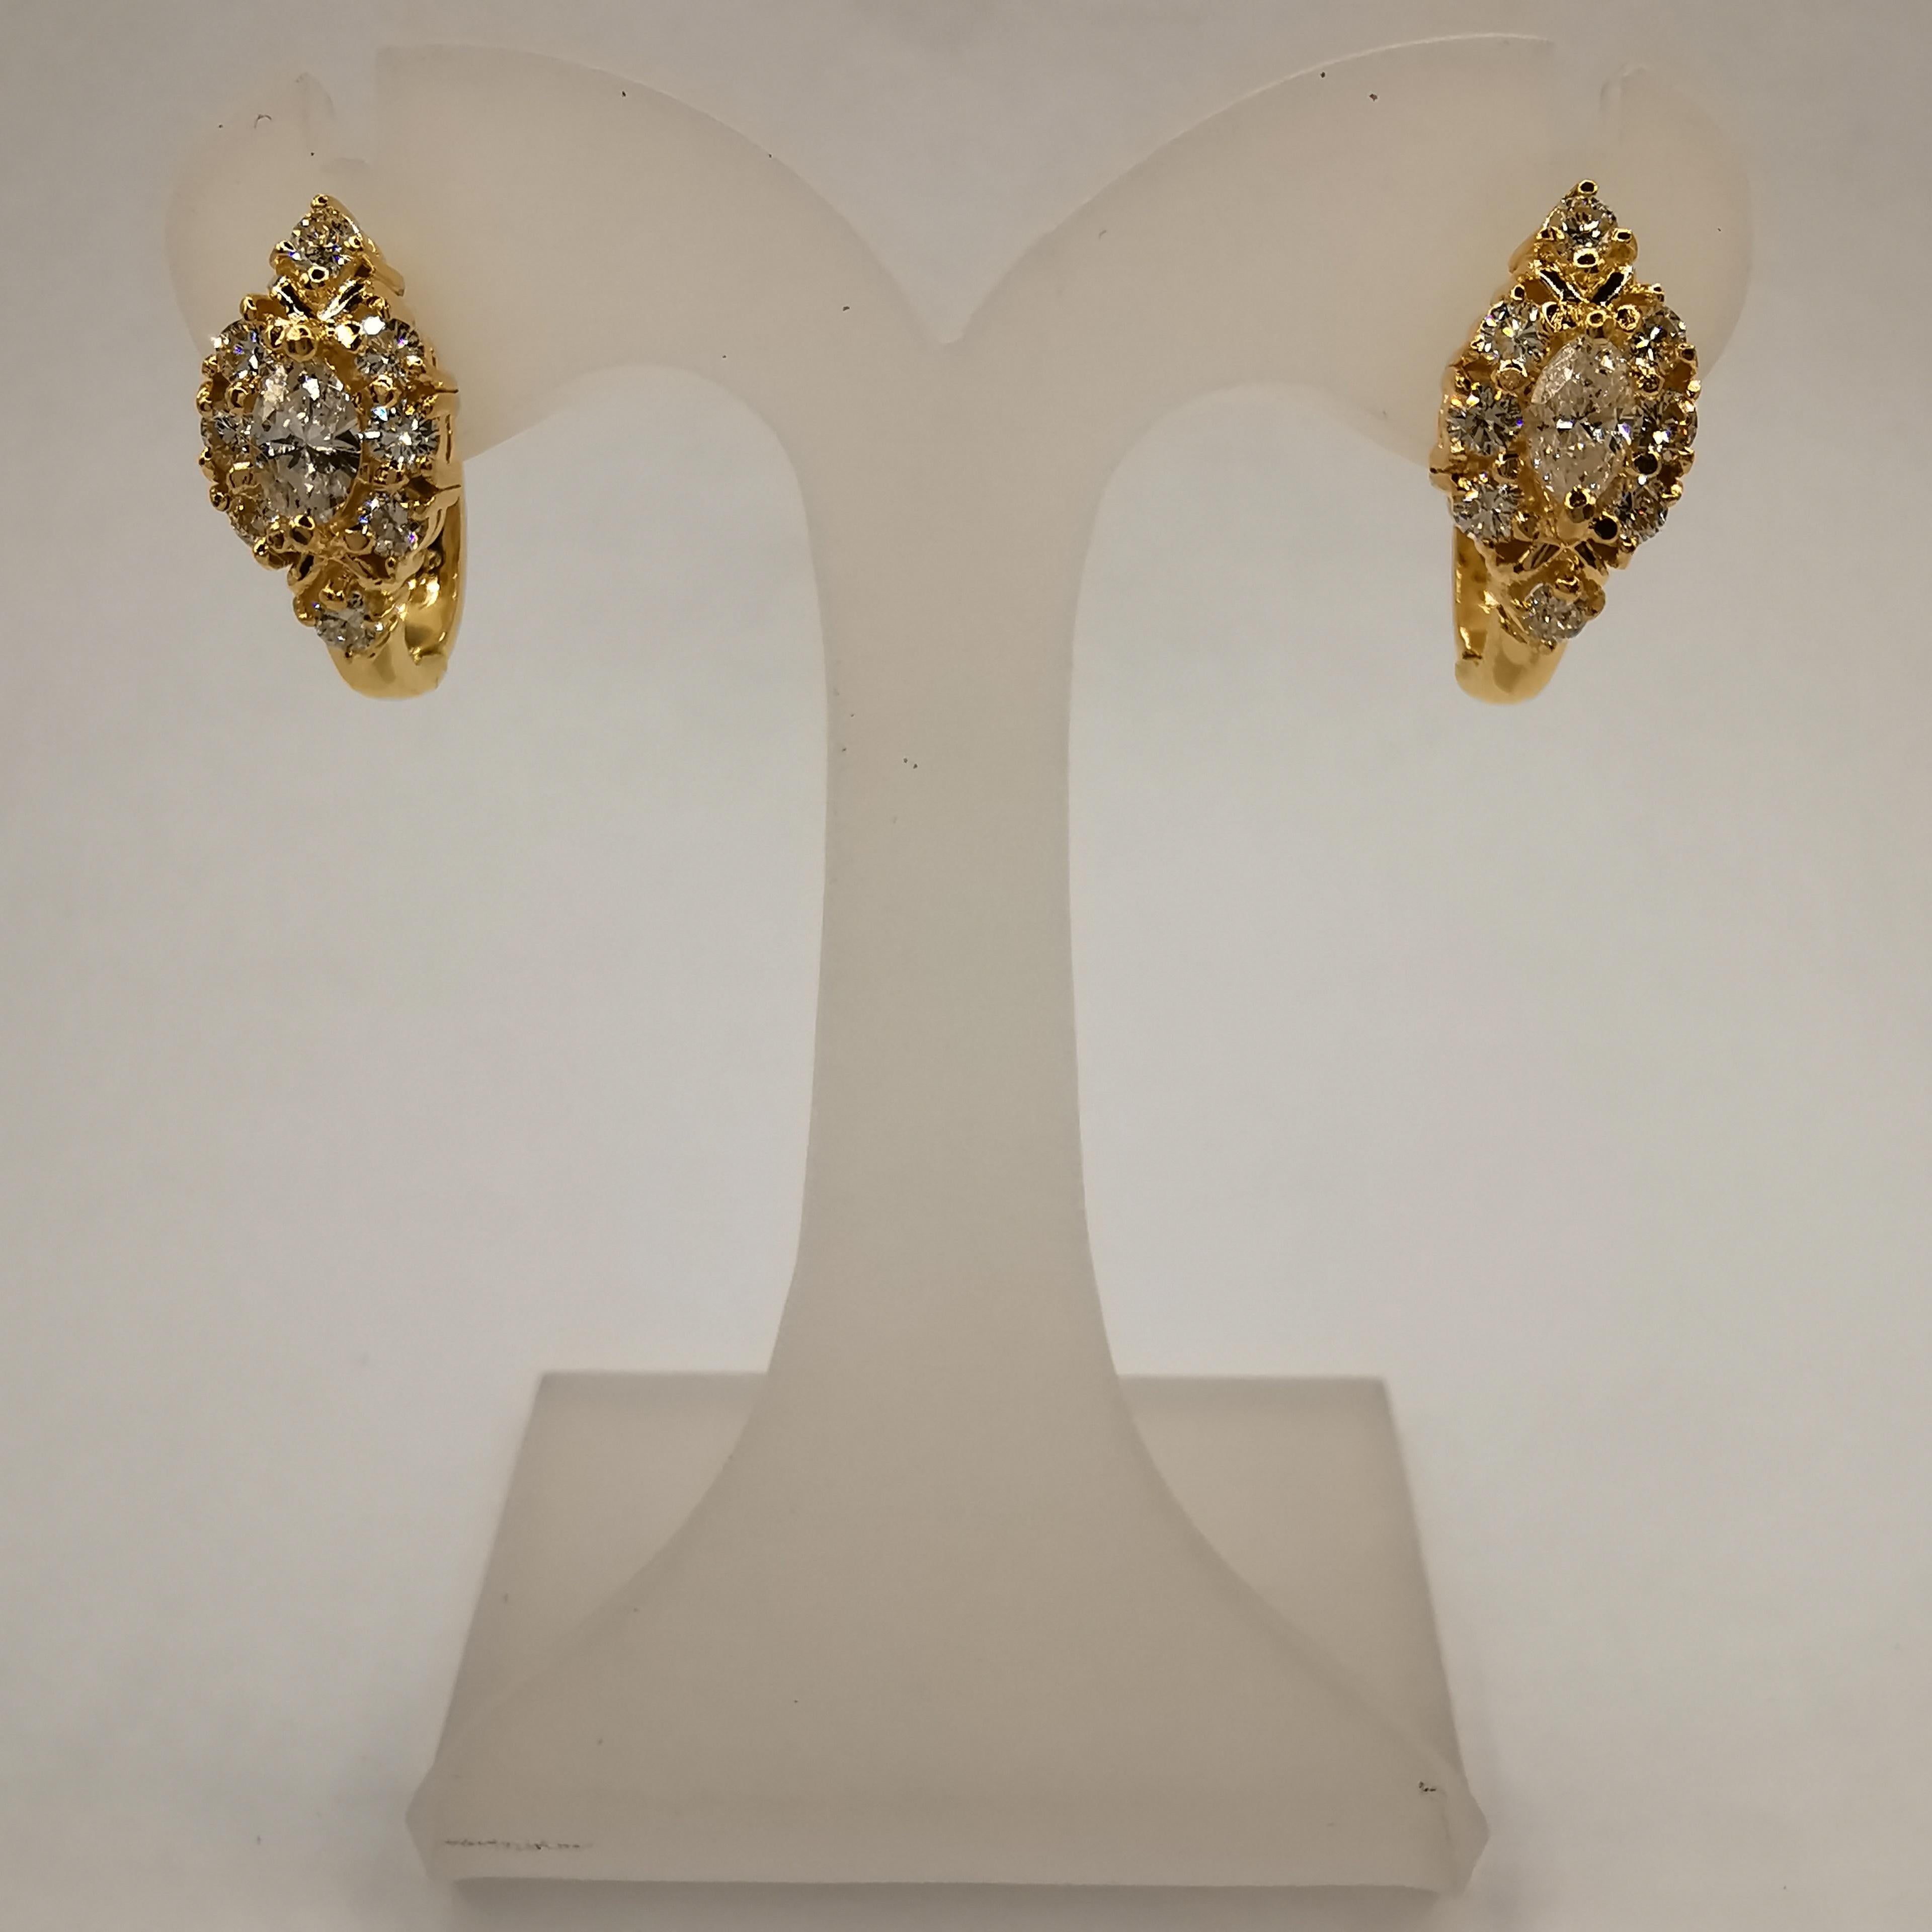 Ces superbes boucles d'oreilles en diamant marquise de 115 carats sont l'accessoire parfait pour toute occasion spéciale. Les boucles d'oreilles sont fabriquées en or jaune 850, dont la pureté est légèrement supérieure à 20k. Elles présentent une